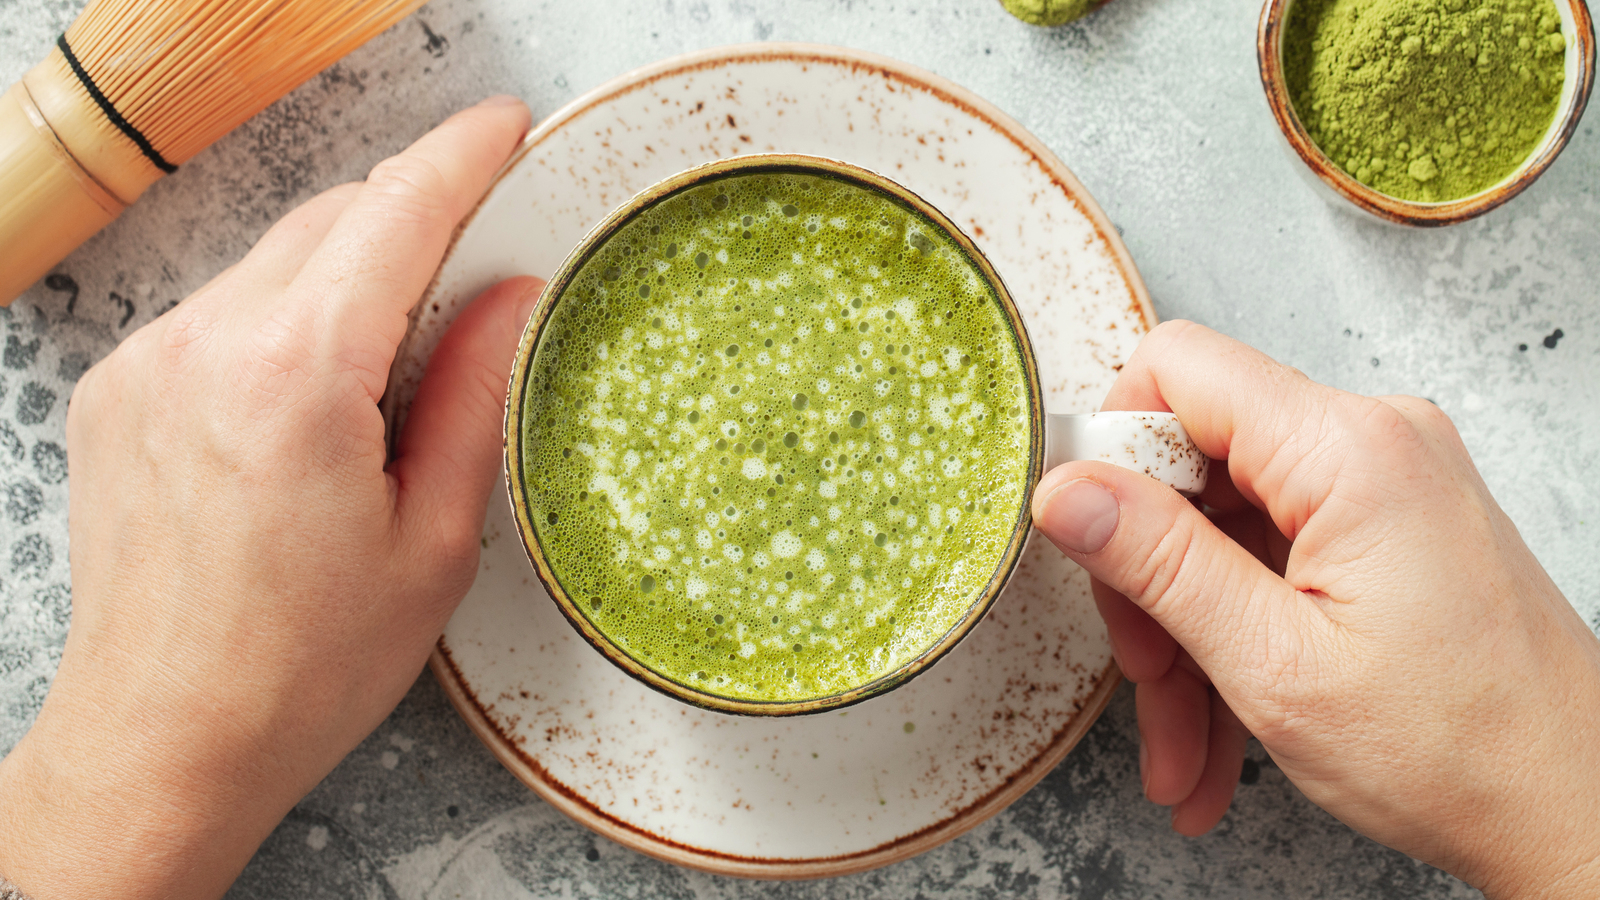 Yeşil çaydan 10 kat fazla antioksidan içeriyor! Matcha çayı ne işe yarar, nasıl hazırlanır?